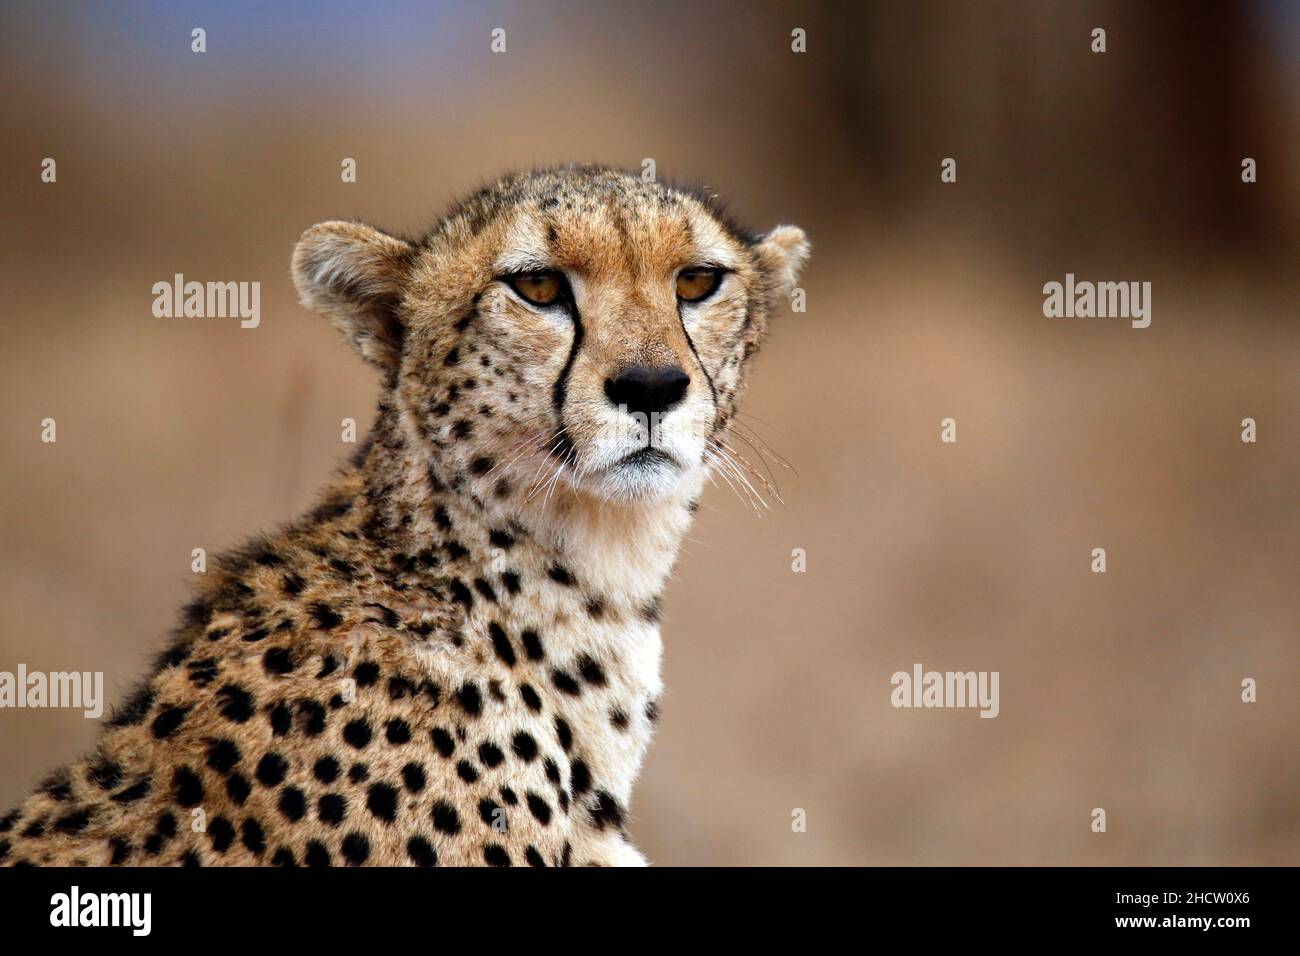 Close-up of a Cheetah. Taita Hills, Kenya Stock Photo